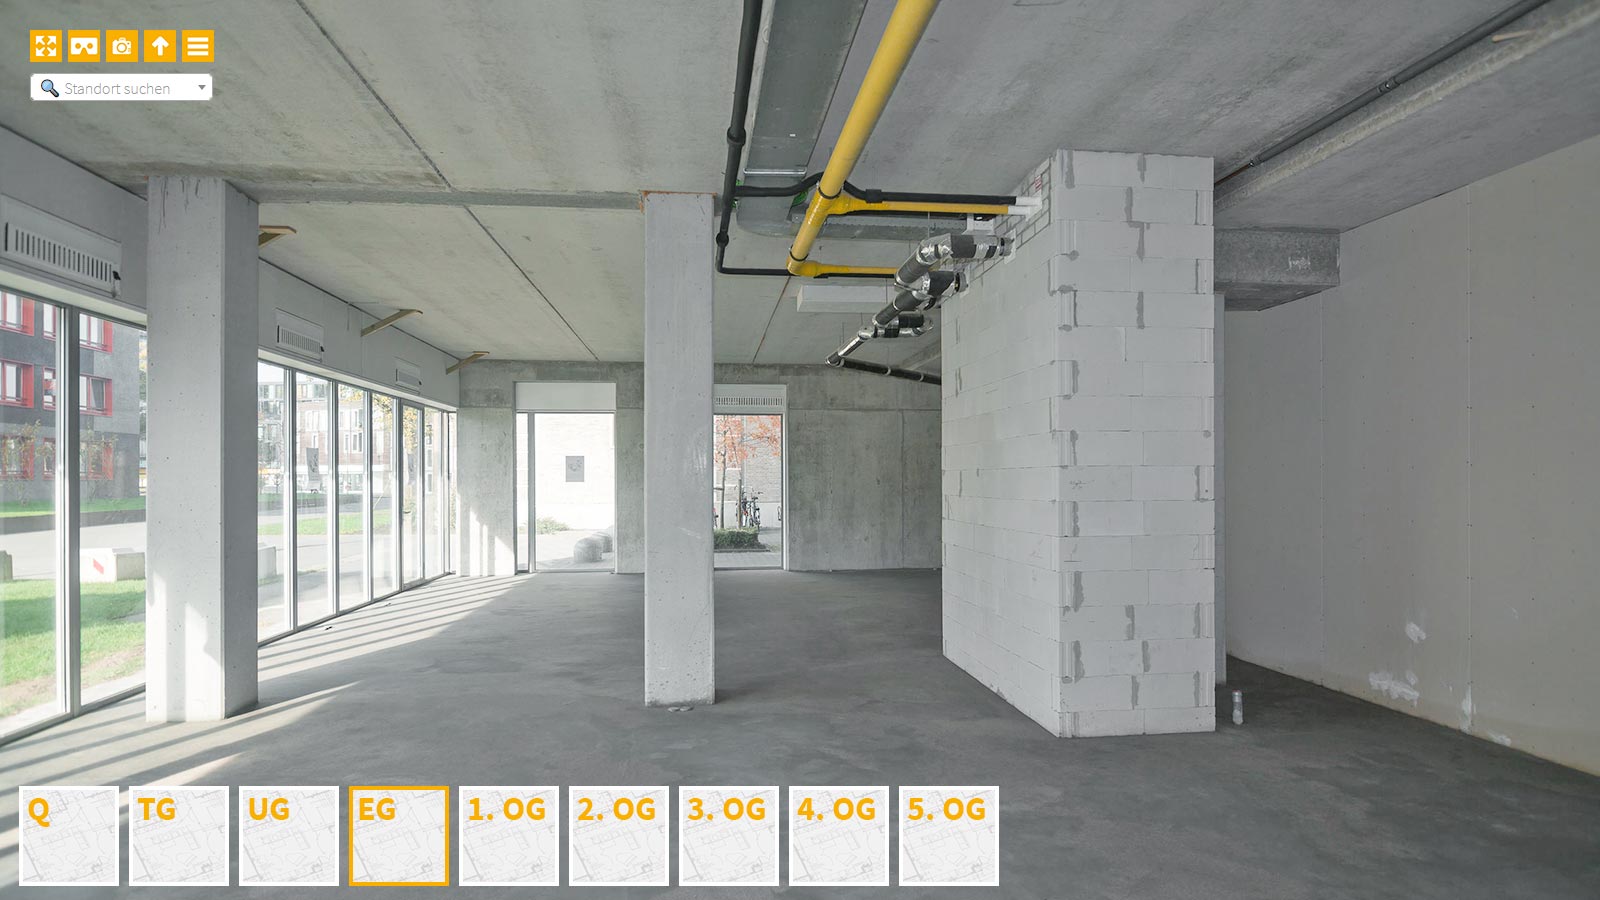 Baudokumentation 360 Grad bei gestörten Projekten in 


	


	


	


	


	


	


	


	


	


	Koblenz









, Bilddokumentation als virtueller Rundgang